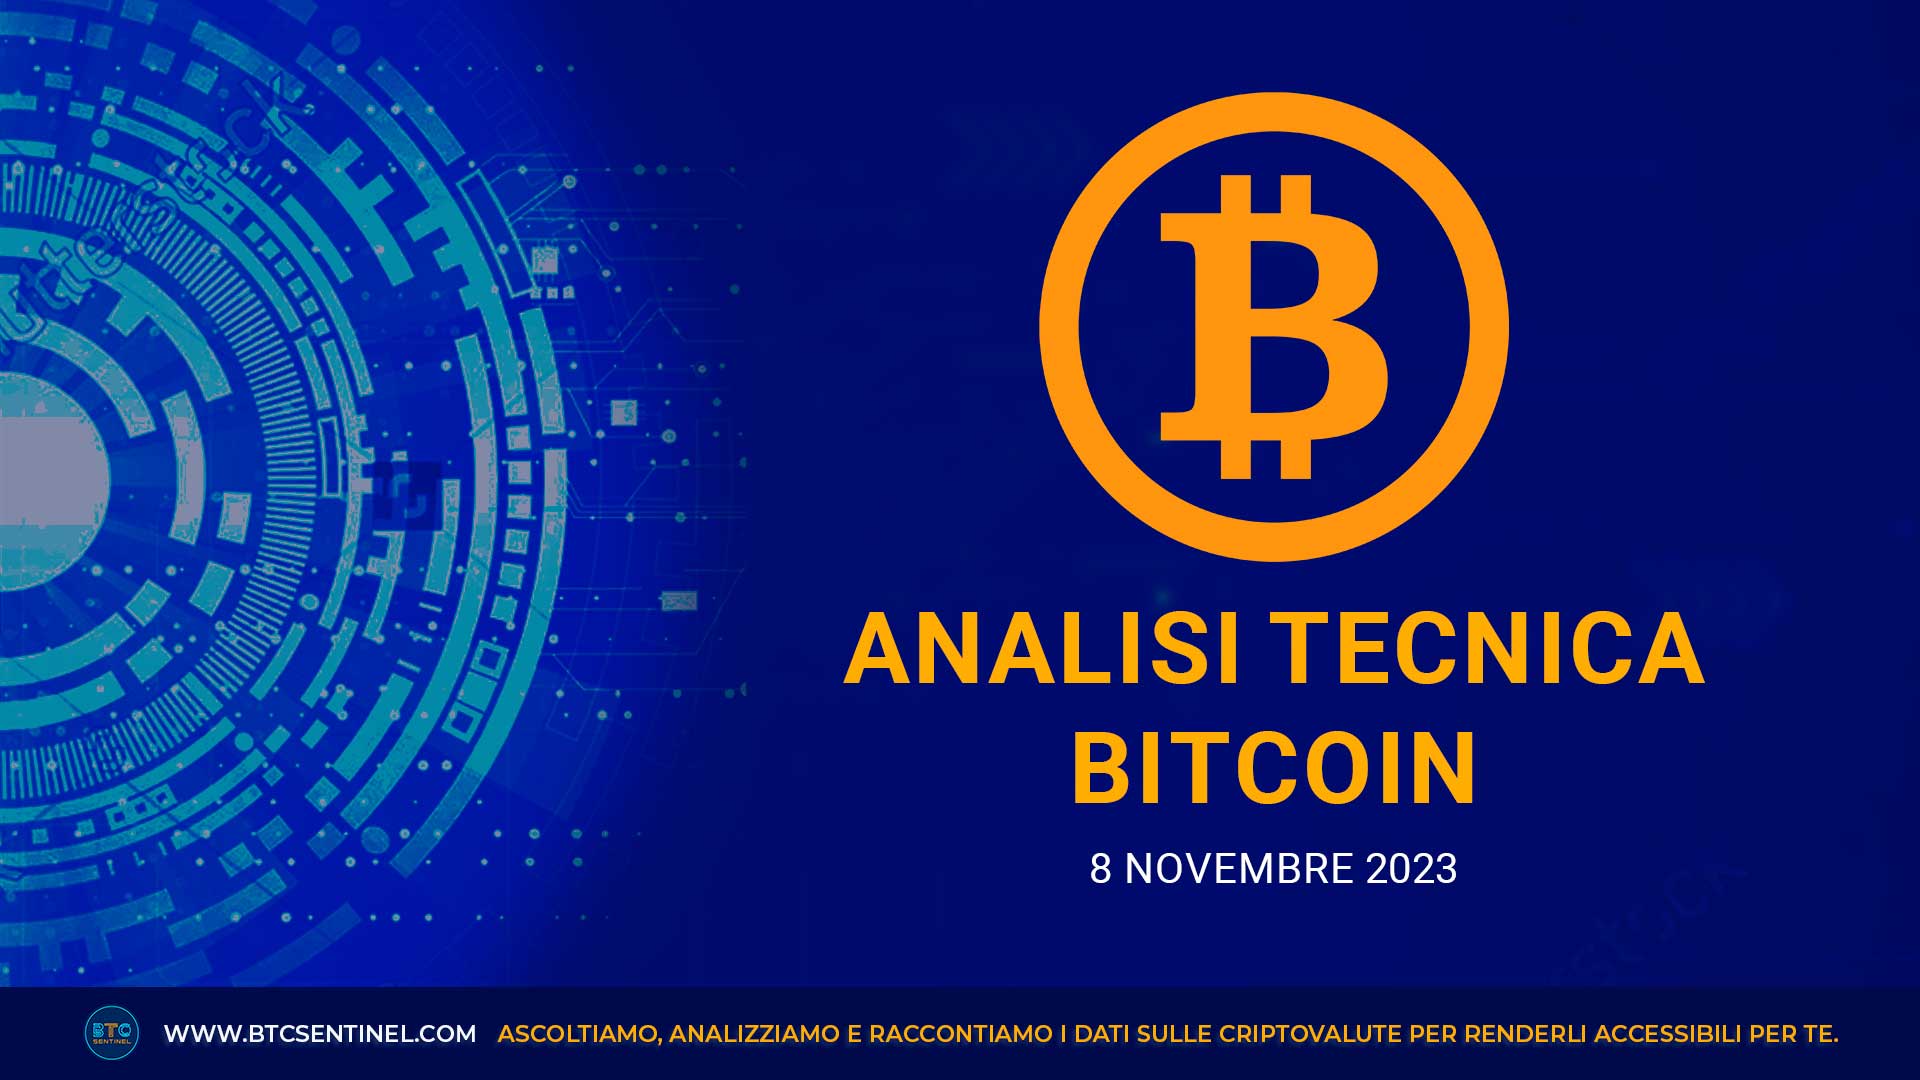 Analisi tecnica Bitcoin BTC dell'8 novembre 2023